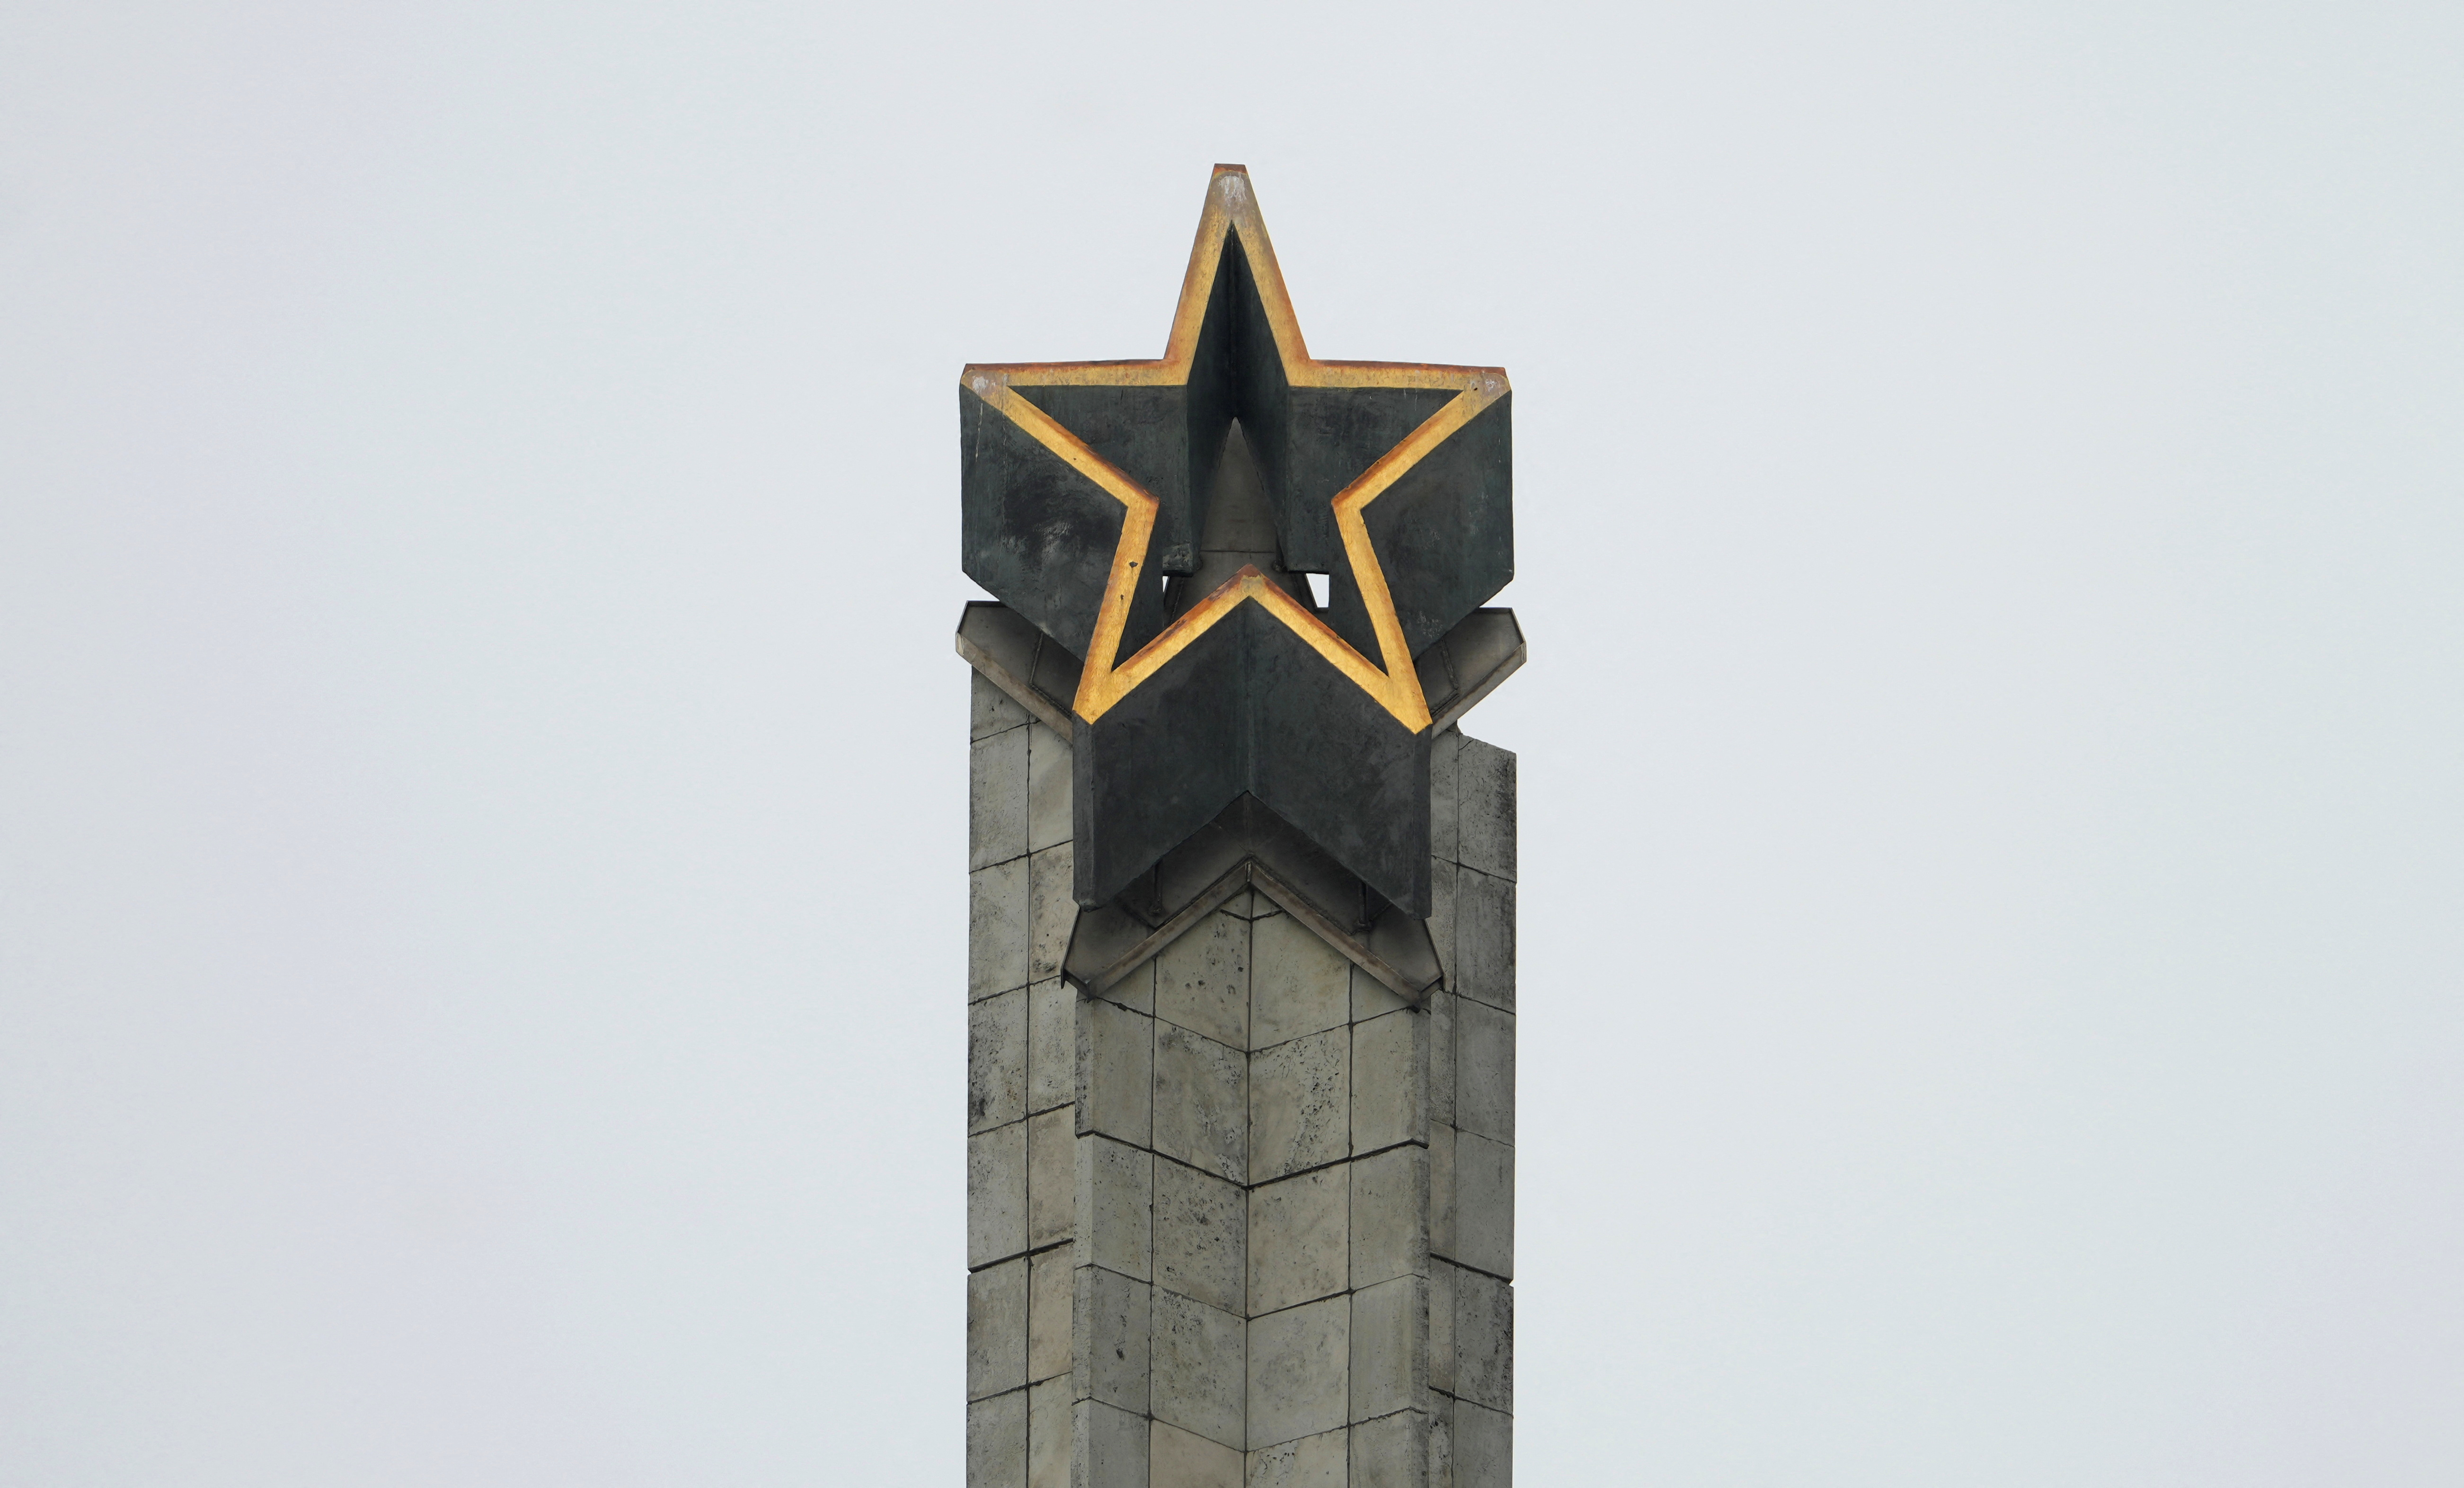 La estrella soviética dominaba la estructura desde la cima (REUTERS/Ints Kalnins)